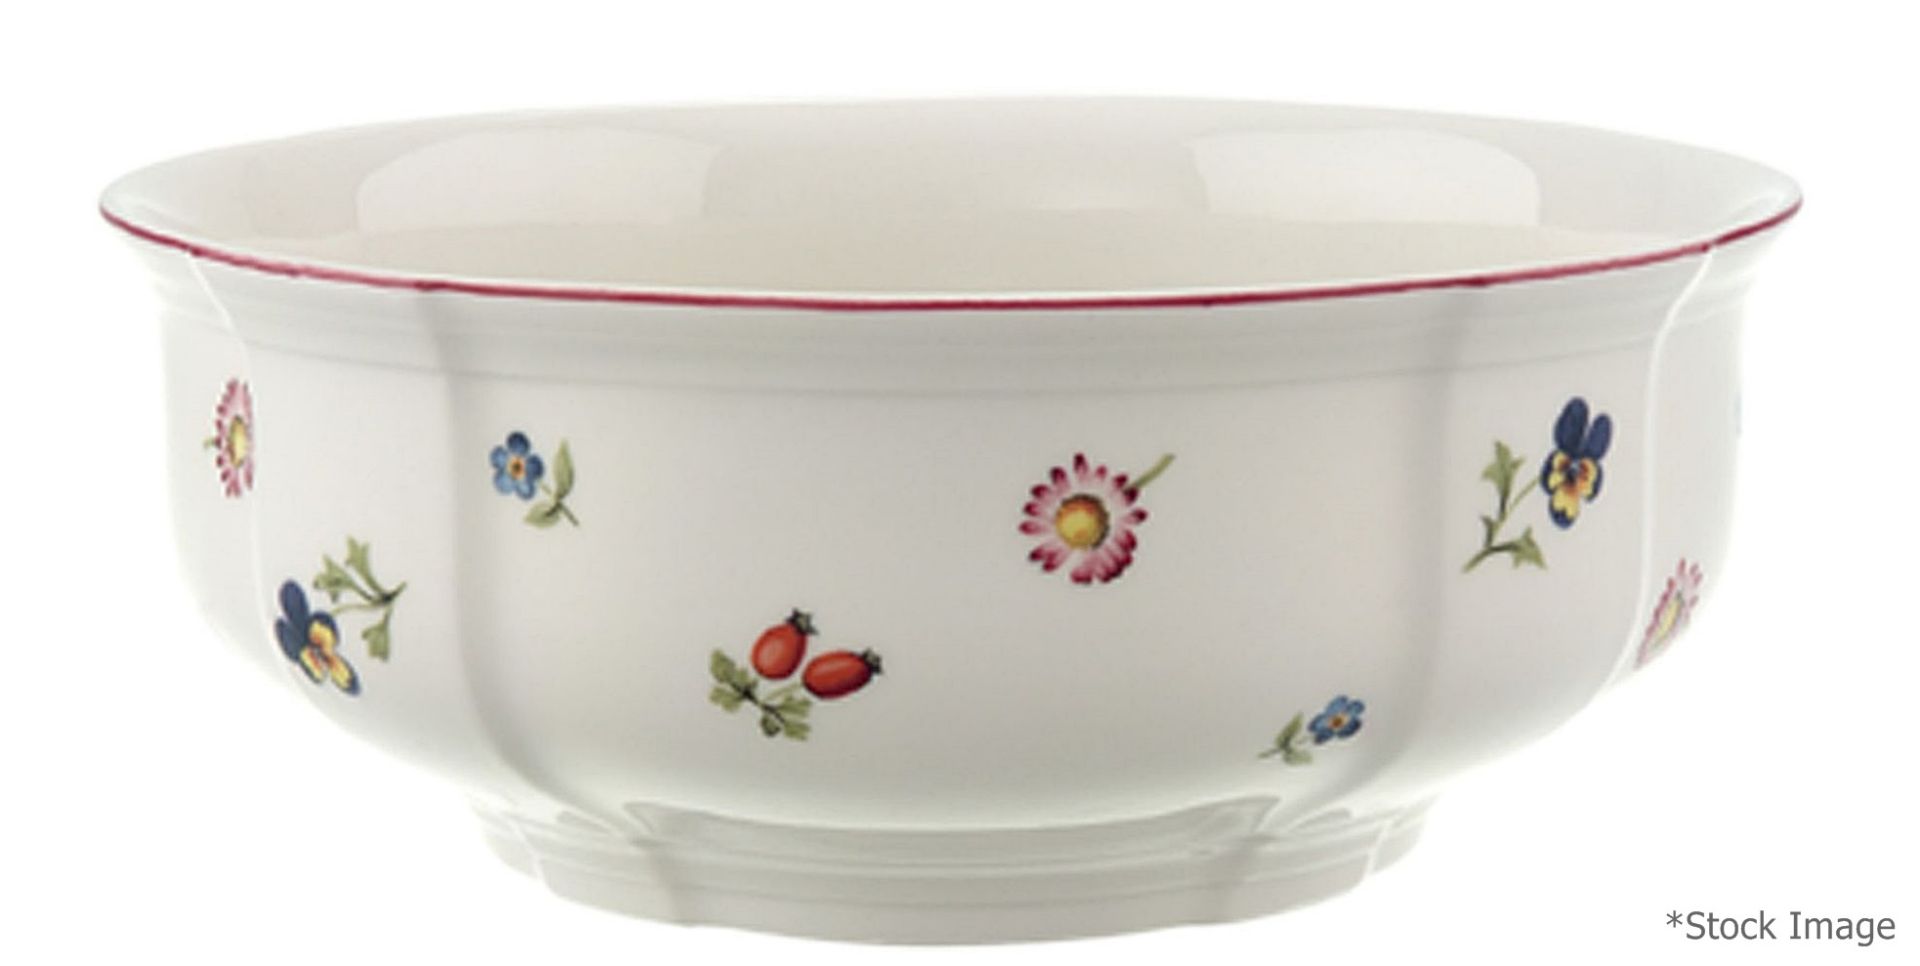 1 x VILLEROY & BOCH 'Petite Fleur' Premium Porcelain Bowl (ø15cm) - Unused Unboxed Stock - Ref: